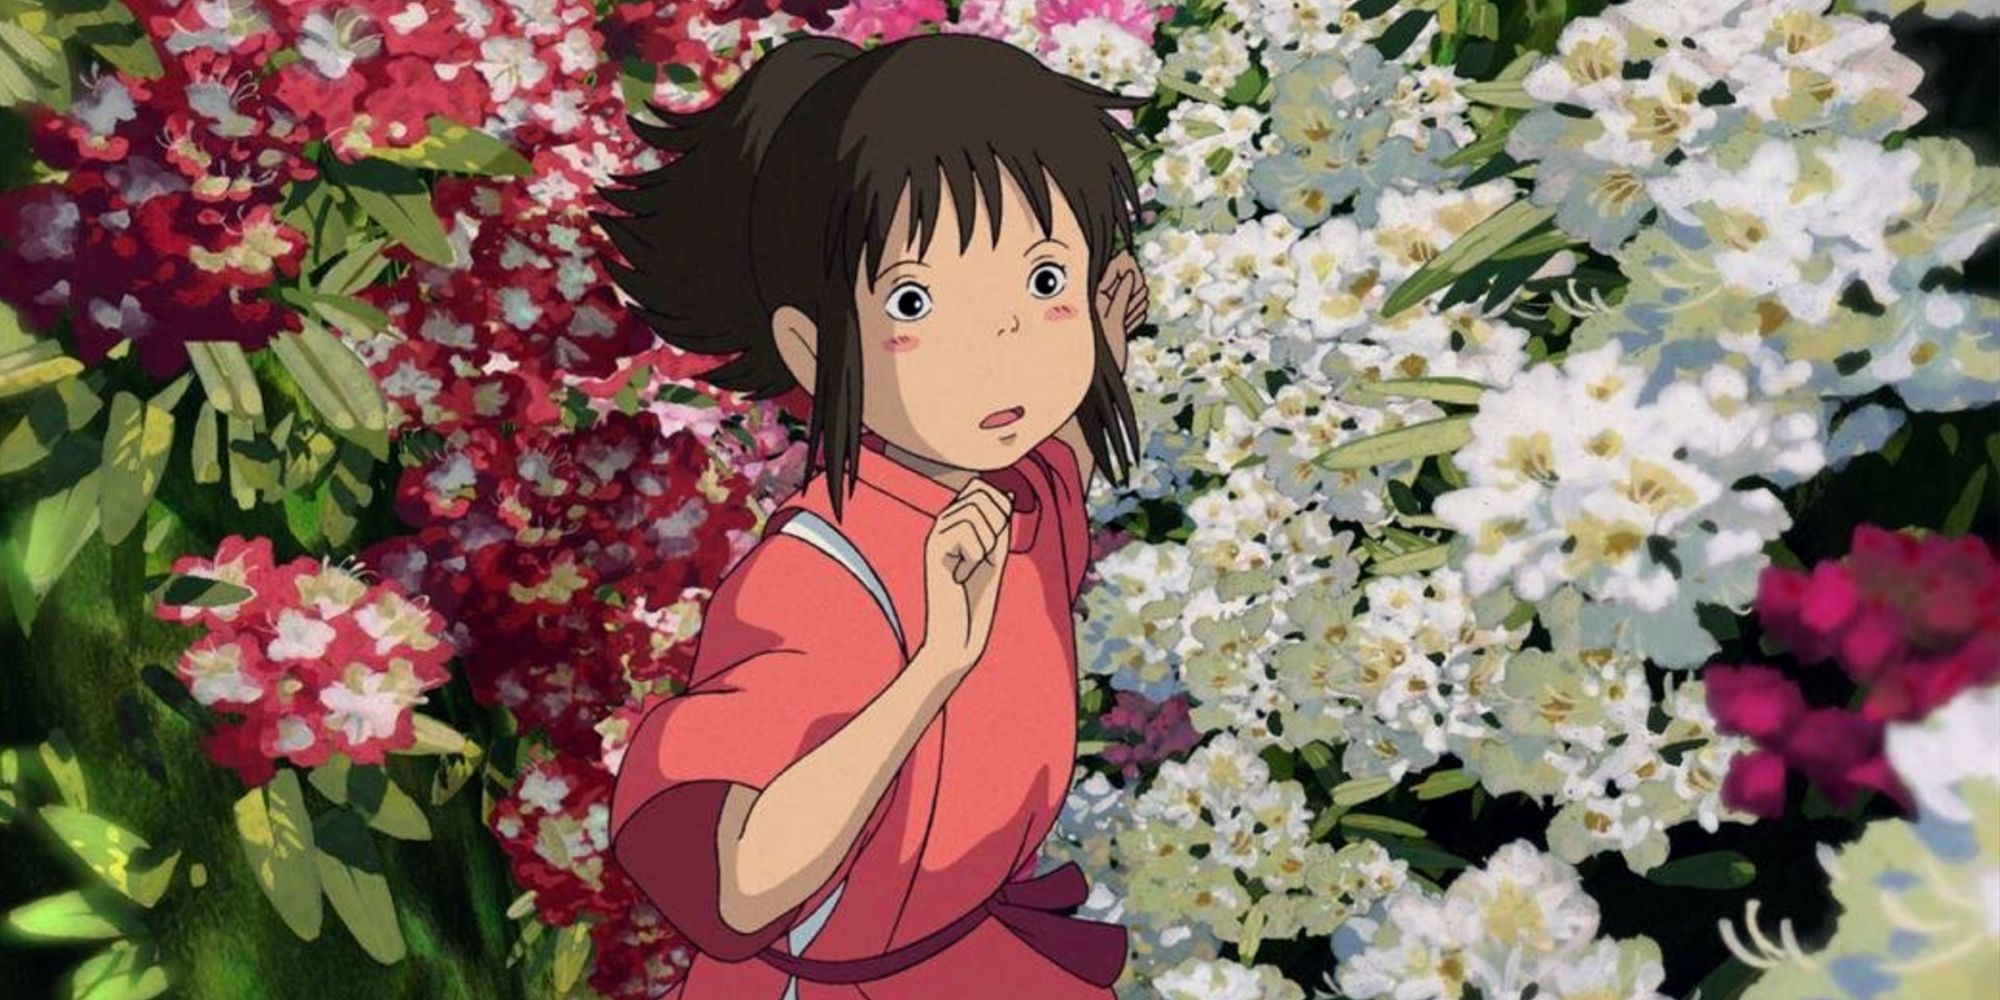 Chihiro runs through flowers in Studio Ghibli's Spirited Away